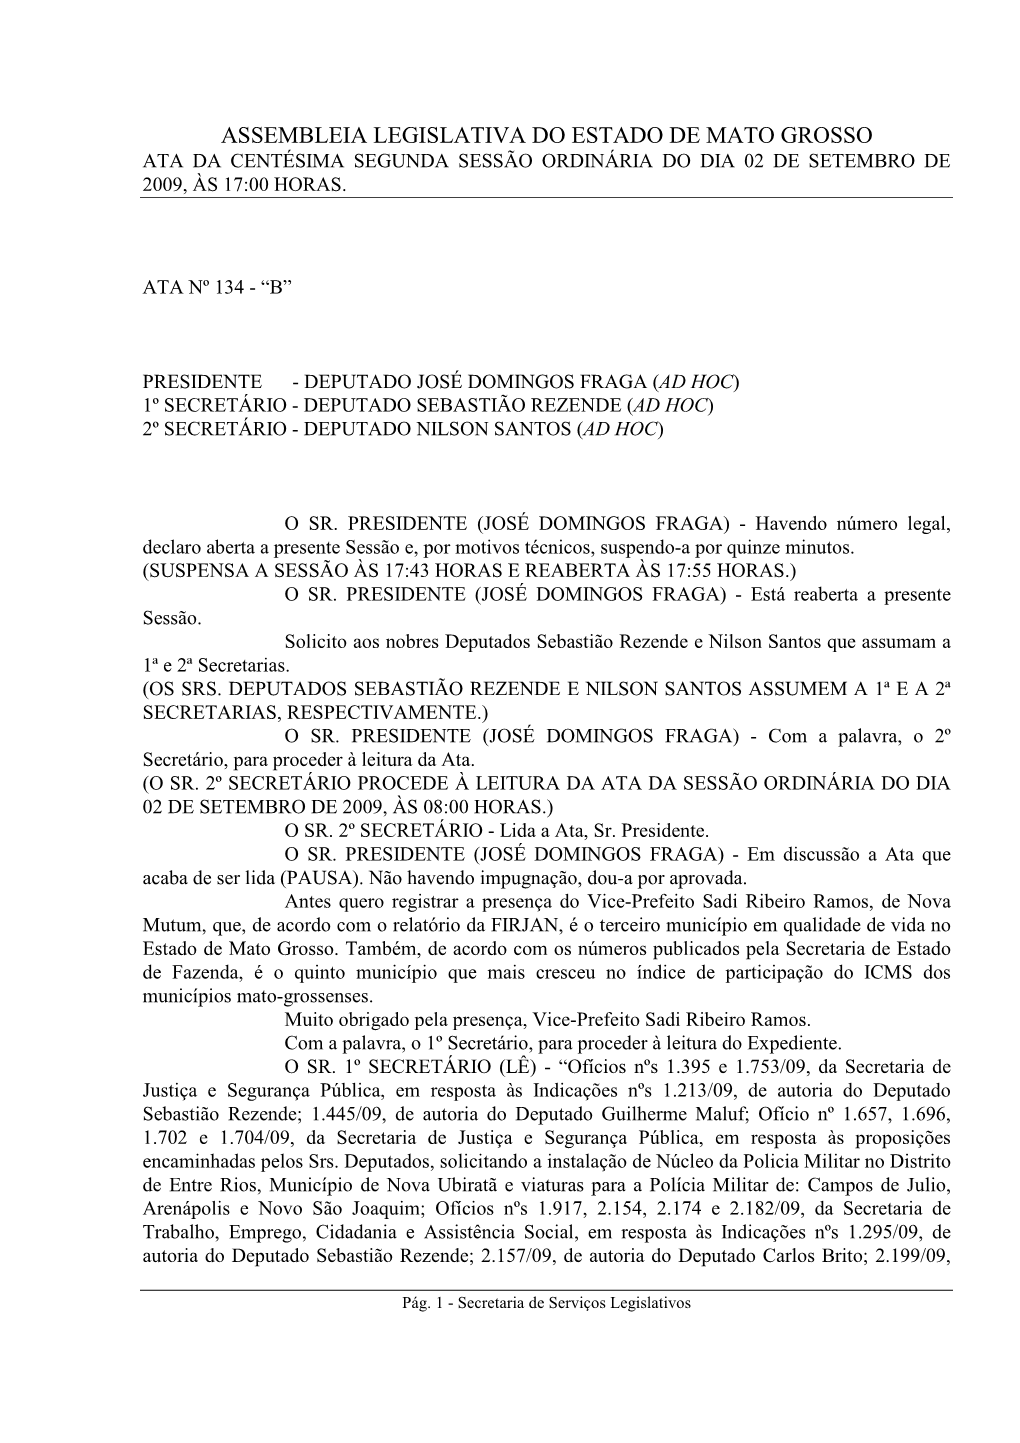 Assembleia Legislativa Do Estado De Mato Grosso Ata Da Centésima Segunda Sessão Ordinária Do Dia 02 De Setembro De 2009, Às 17:00 Horas